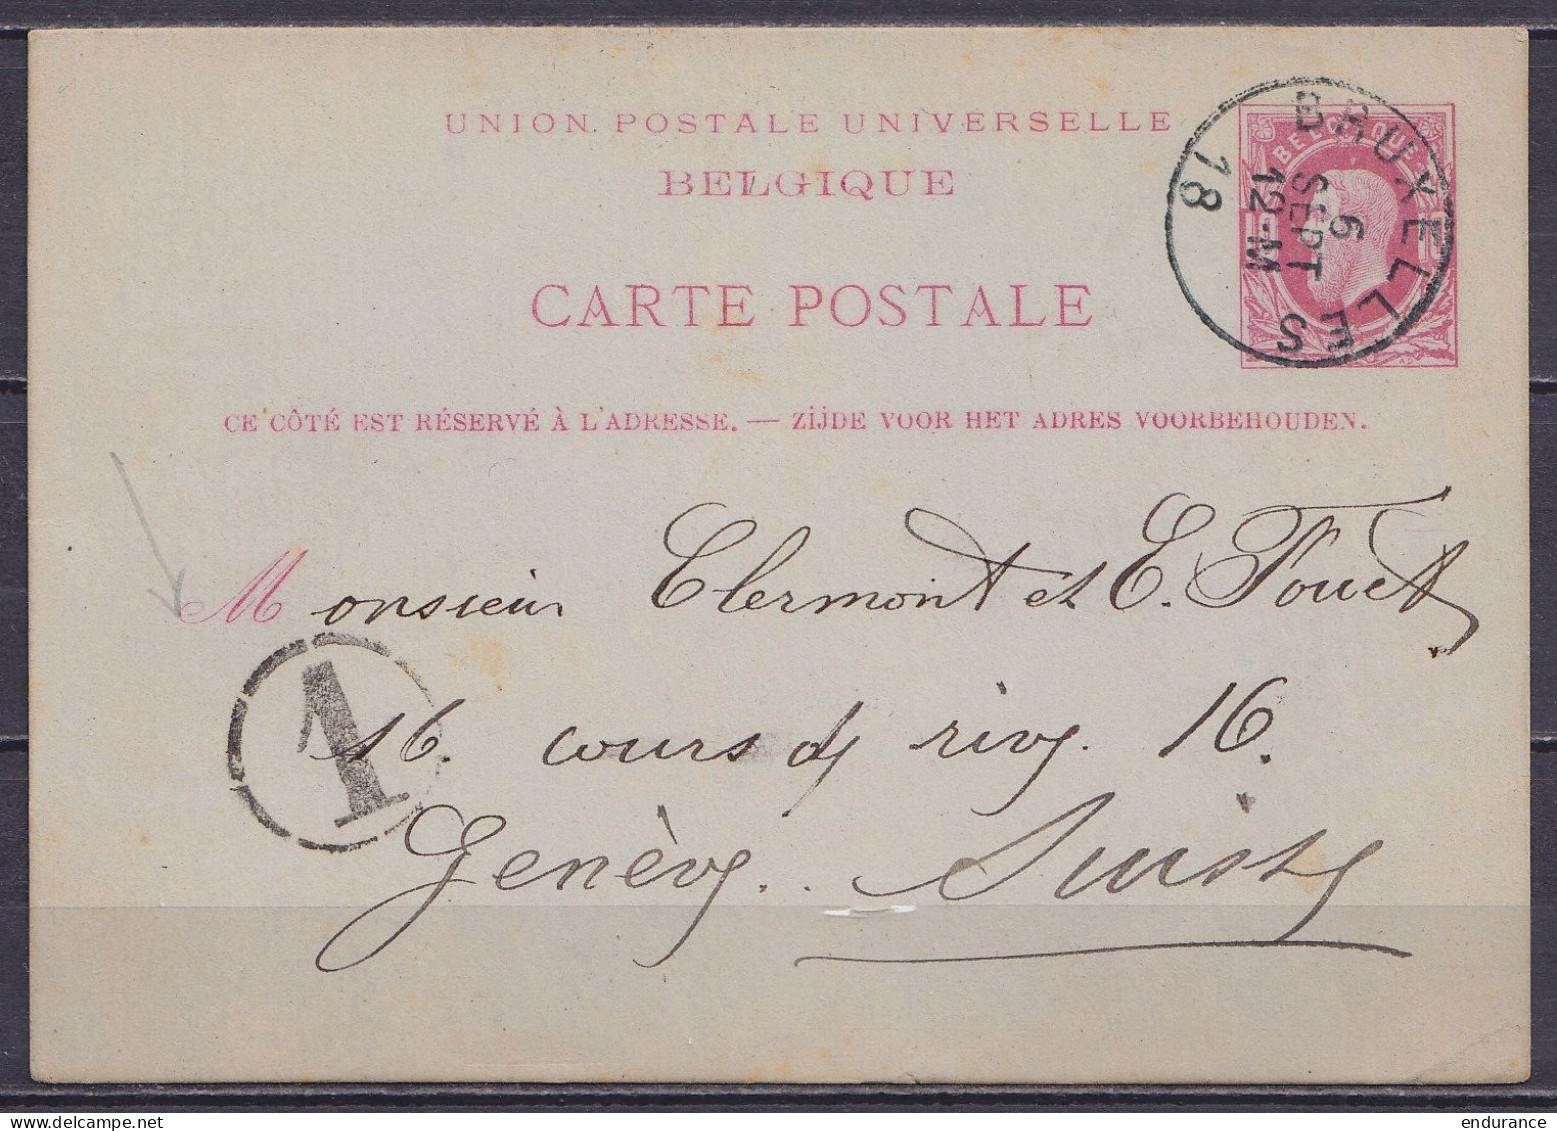 EP CP 10c Rouge (type N°74) Càd BRUXELLES /6 SEPT 18?? Pour GENEVE Suisse - Postcards 1871-1909